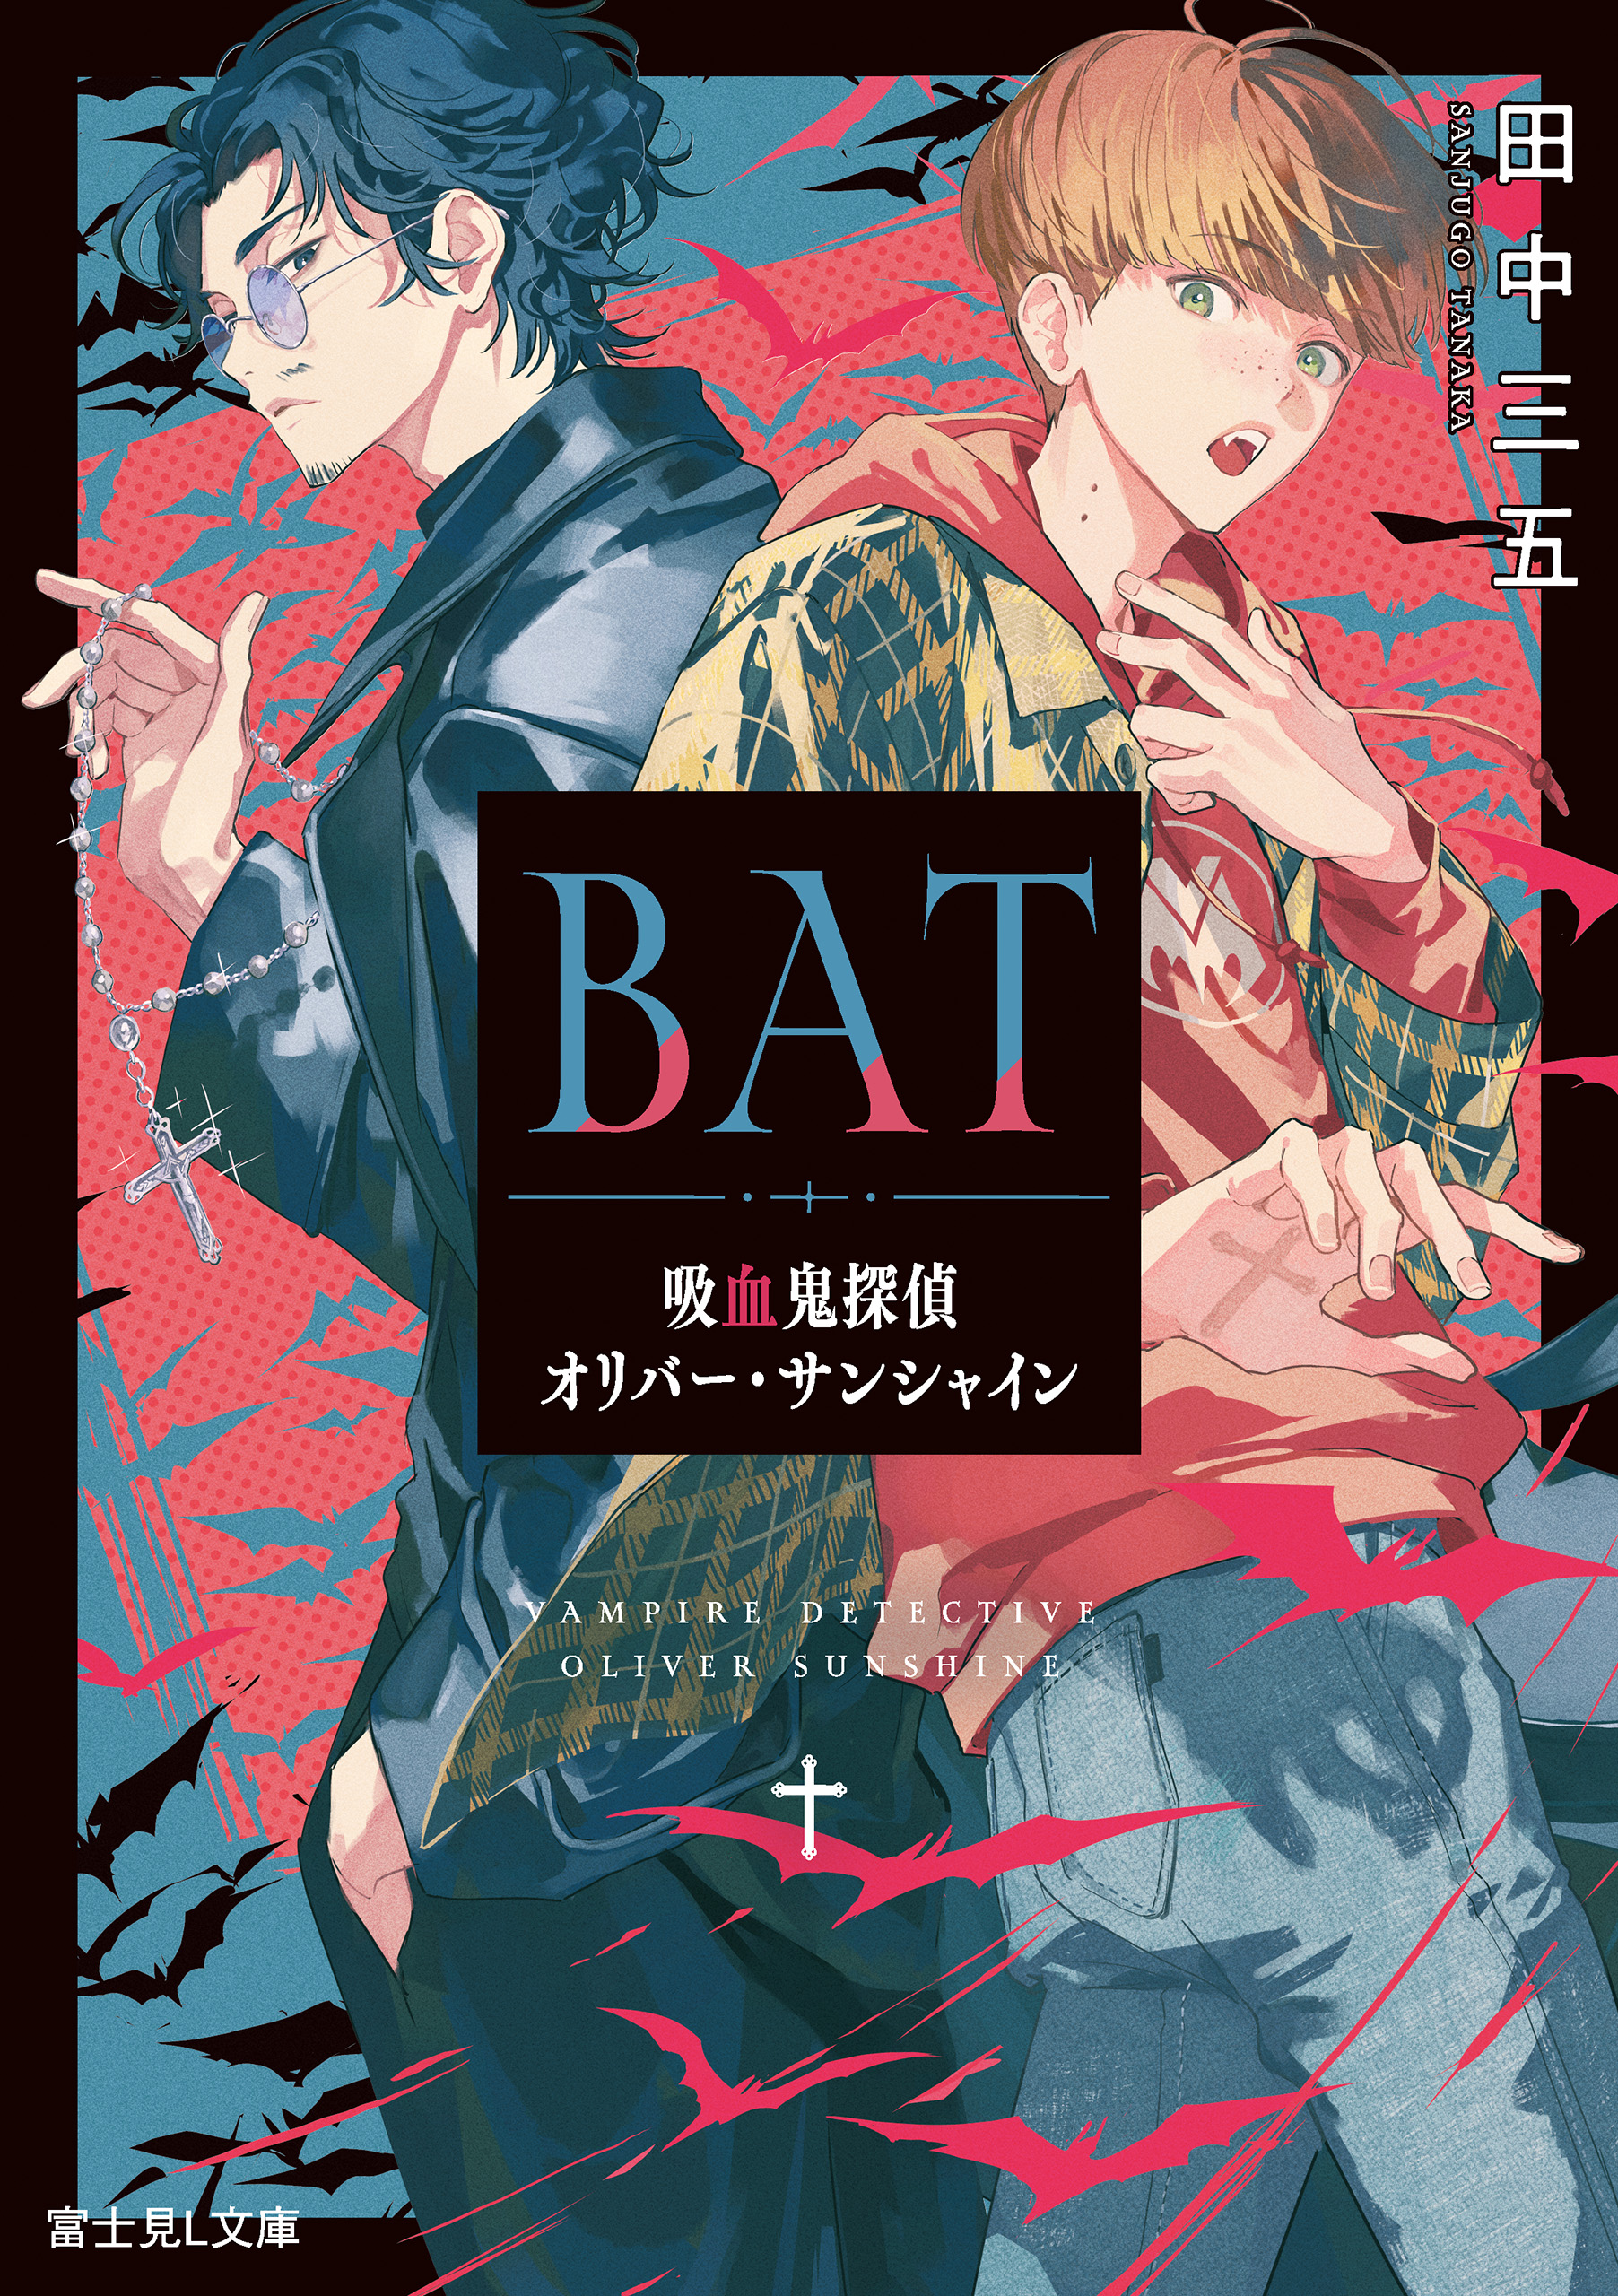 BAT 吸血鬼探偵オリバー・サンシャイン - 田中三五/うごんば - 漫画